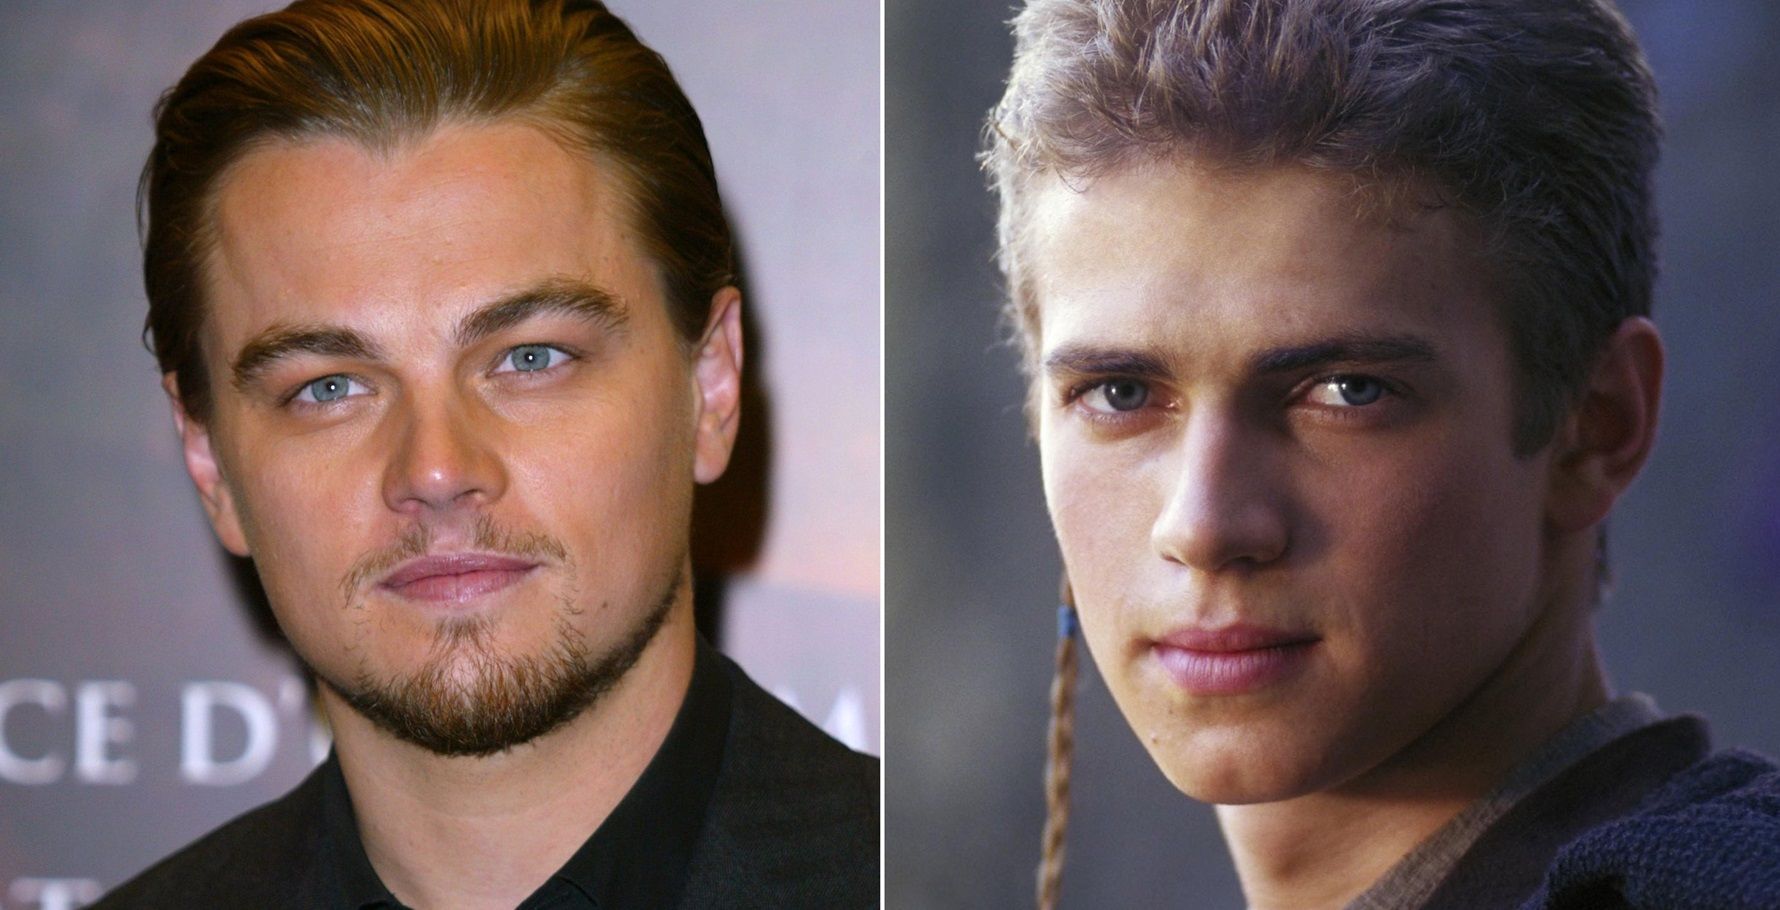 Leonardo DiCaprio as Anakin